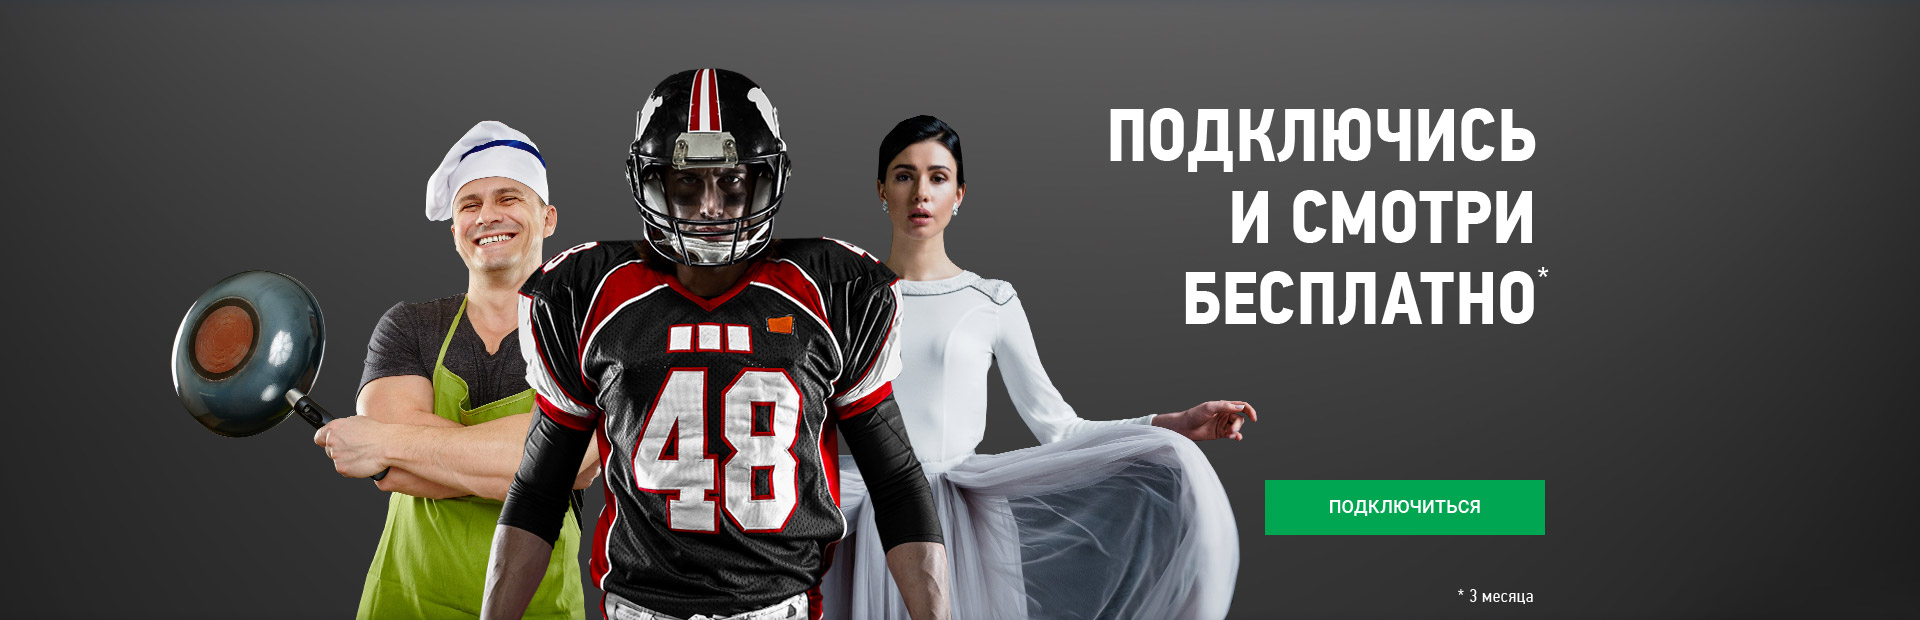 Рекламная акция НТВ-ПЛЮС «Подключись и смотри бесплатно»